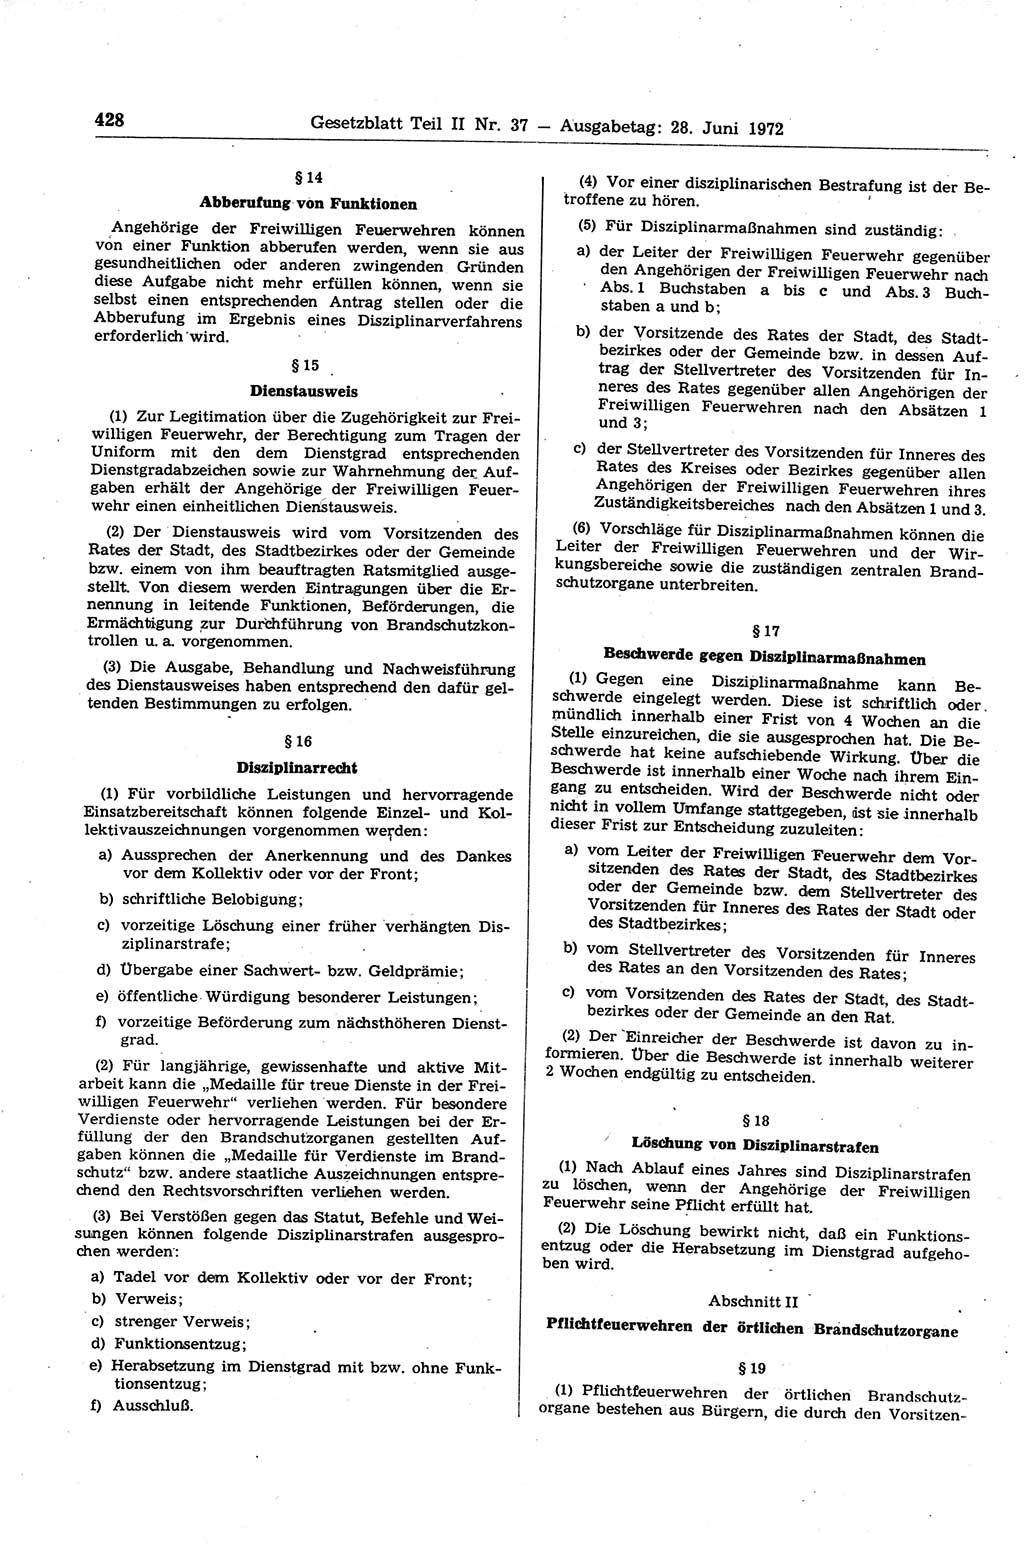 Gesetzblatt (GBl.) der Deutschen Demokratischen Republik (DDR) Teil ⅠⅠ 1972, Seite 428 (GBl. DDR ⅠⅠ 1972, S. 428)